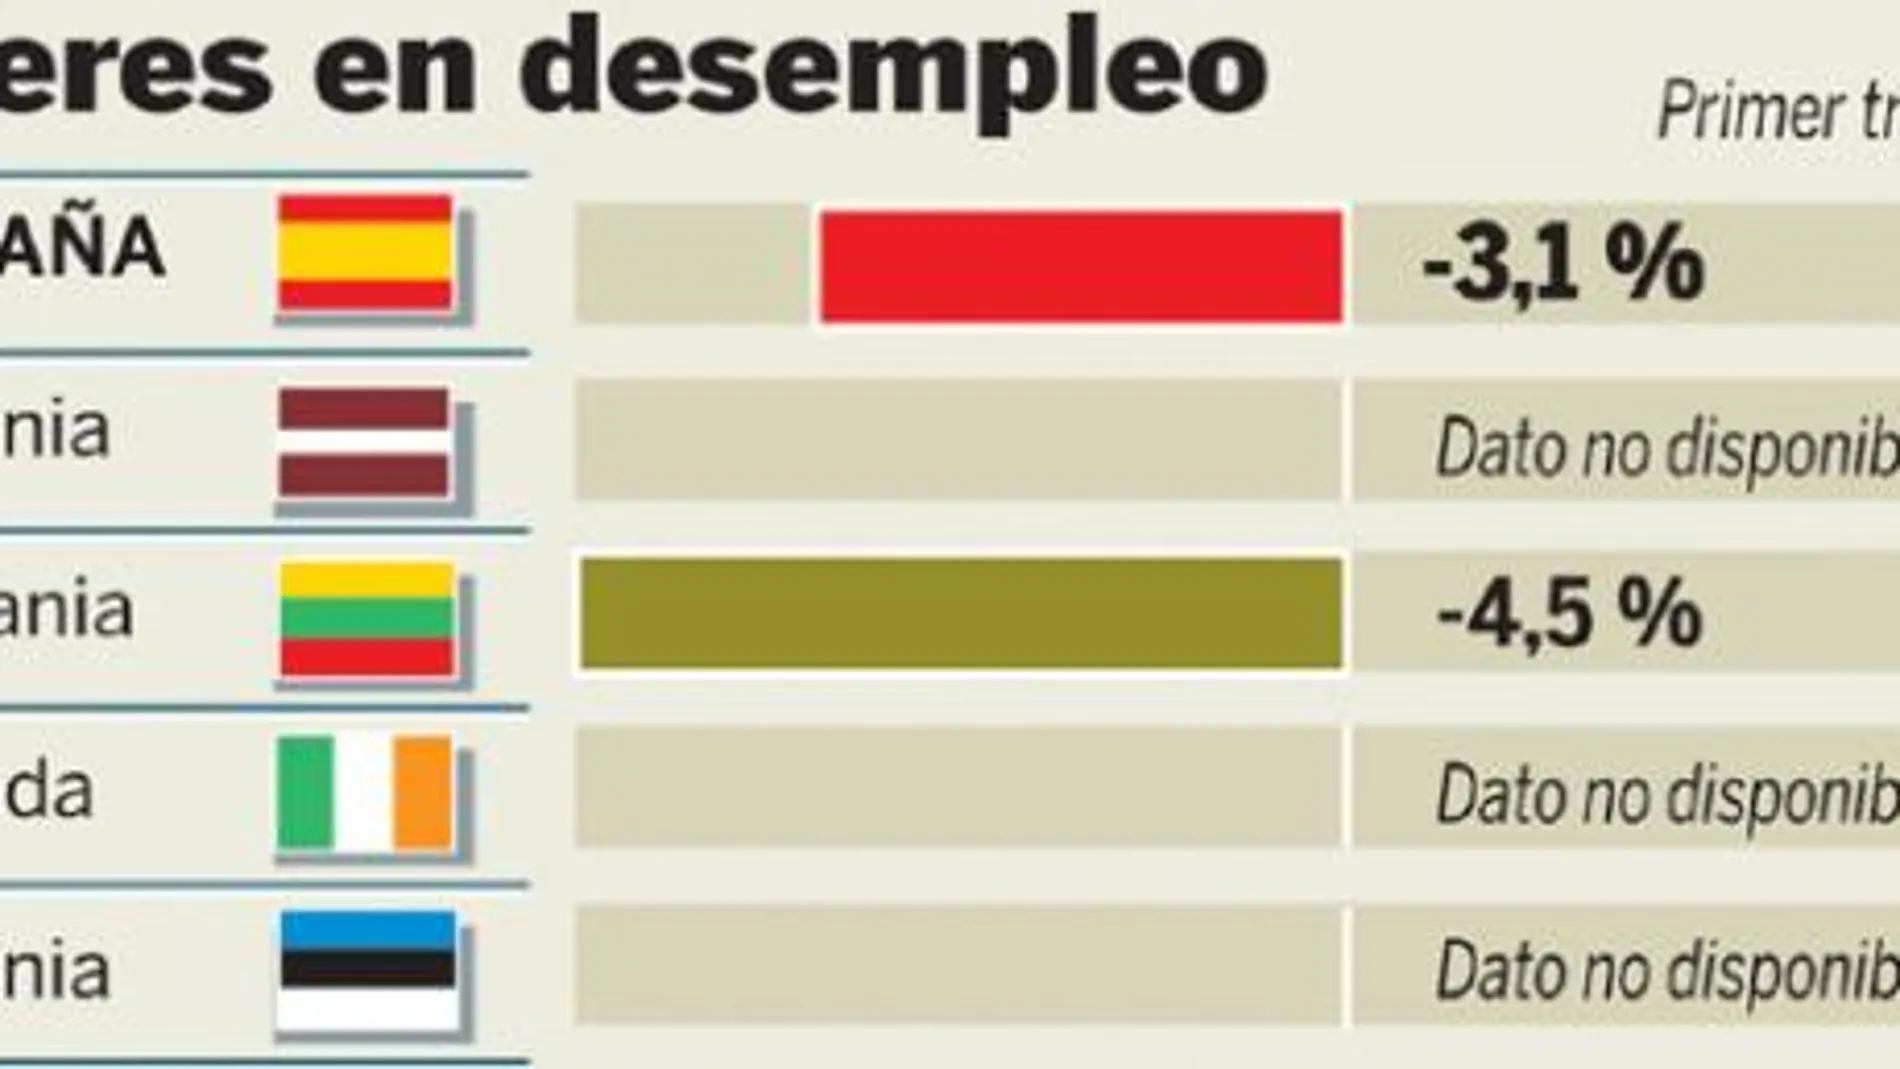 El mercado español destruye más de la mitad del empleo de la eurozona